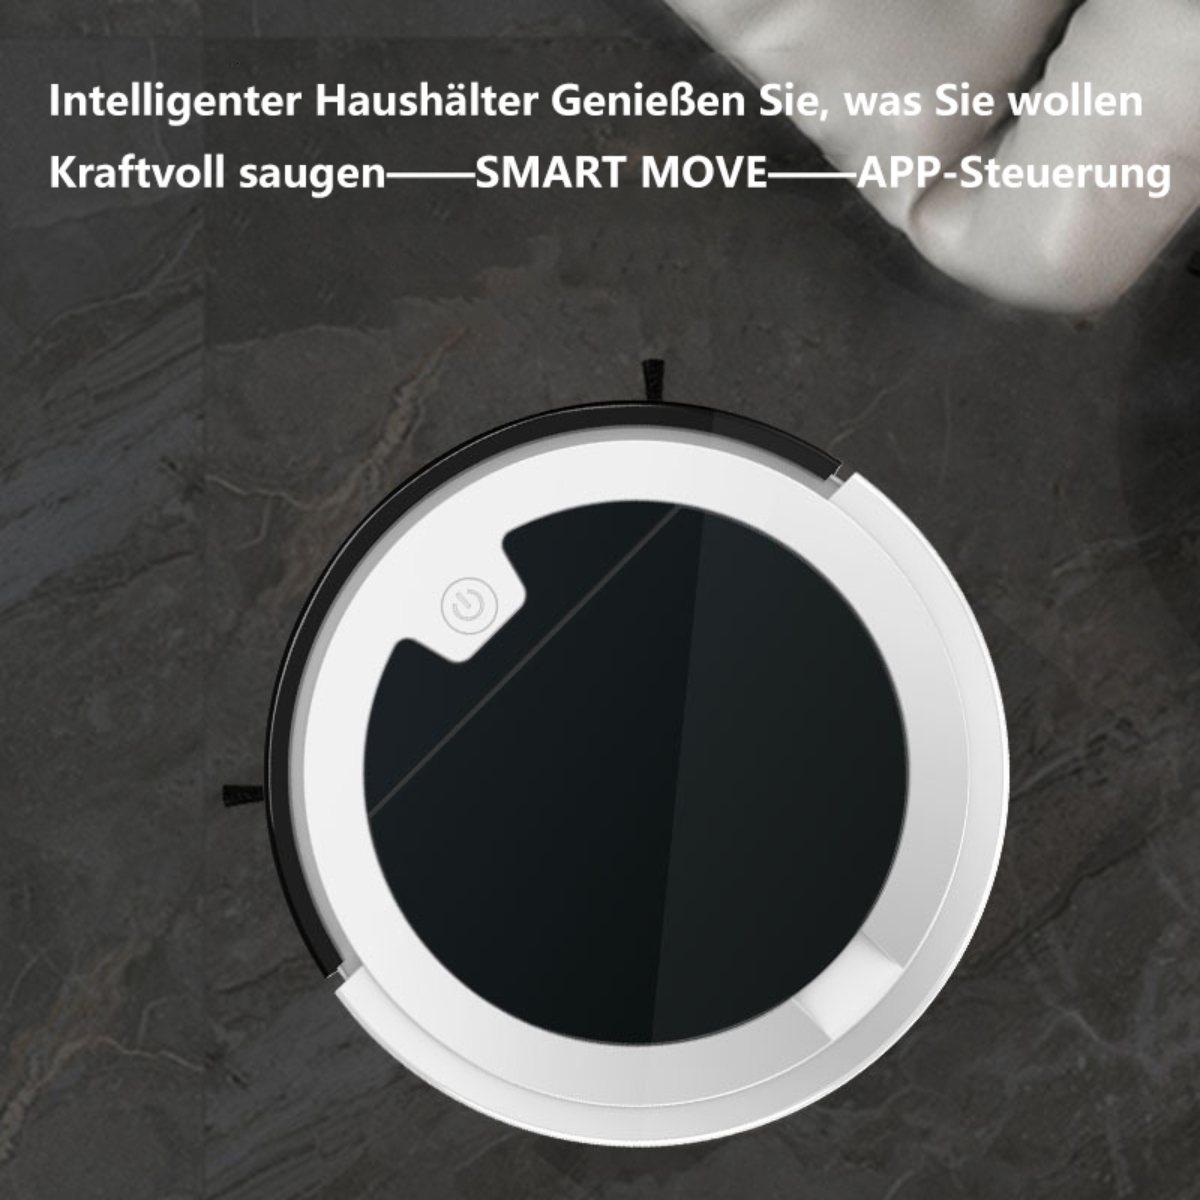 UWOT Vollautomatische Kehrmaschine: Schlank, - Saugroboter Reinigungsassistent USB-Aufladung intelligenter smart